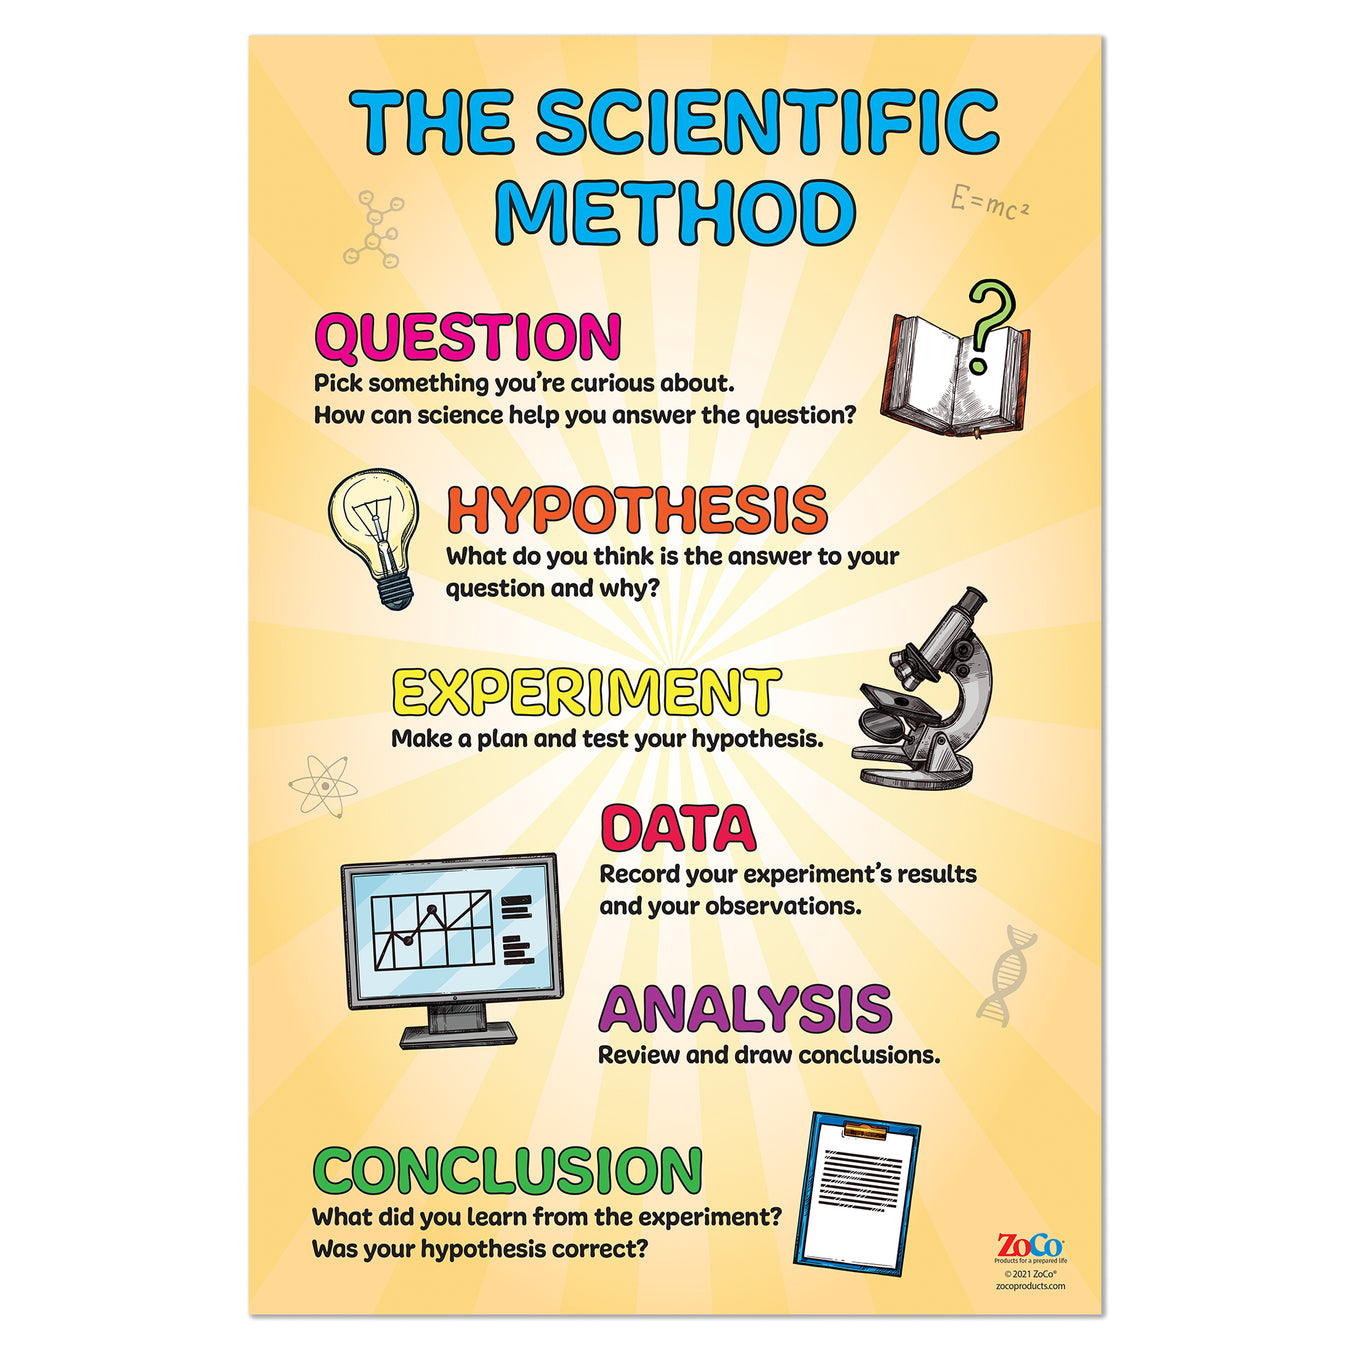 Scientific Method Poster - 12"x18" - Laminated